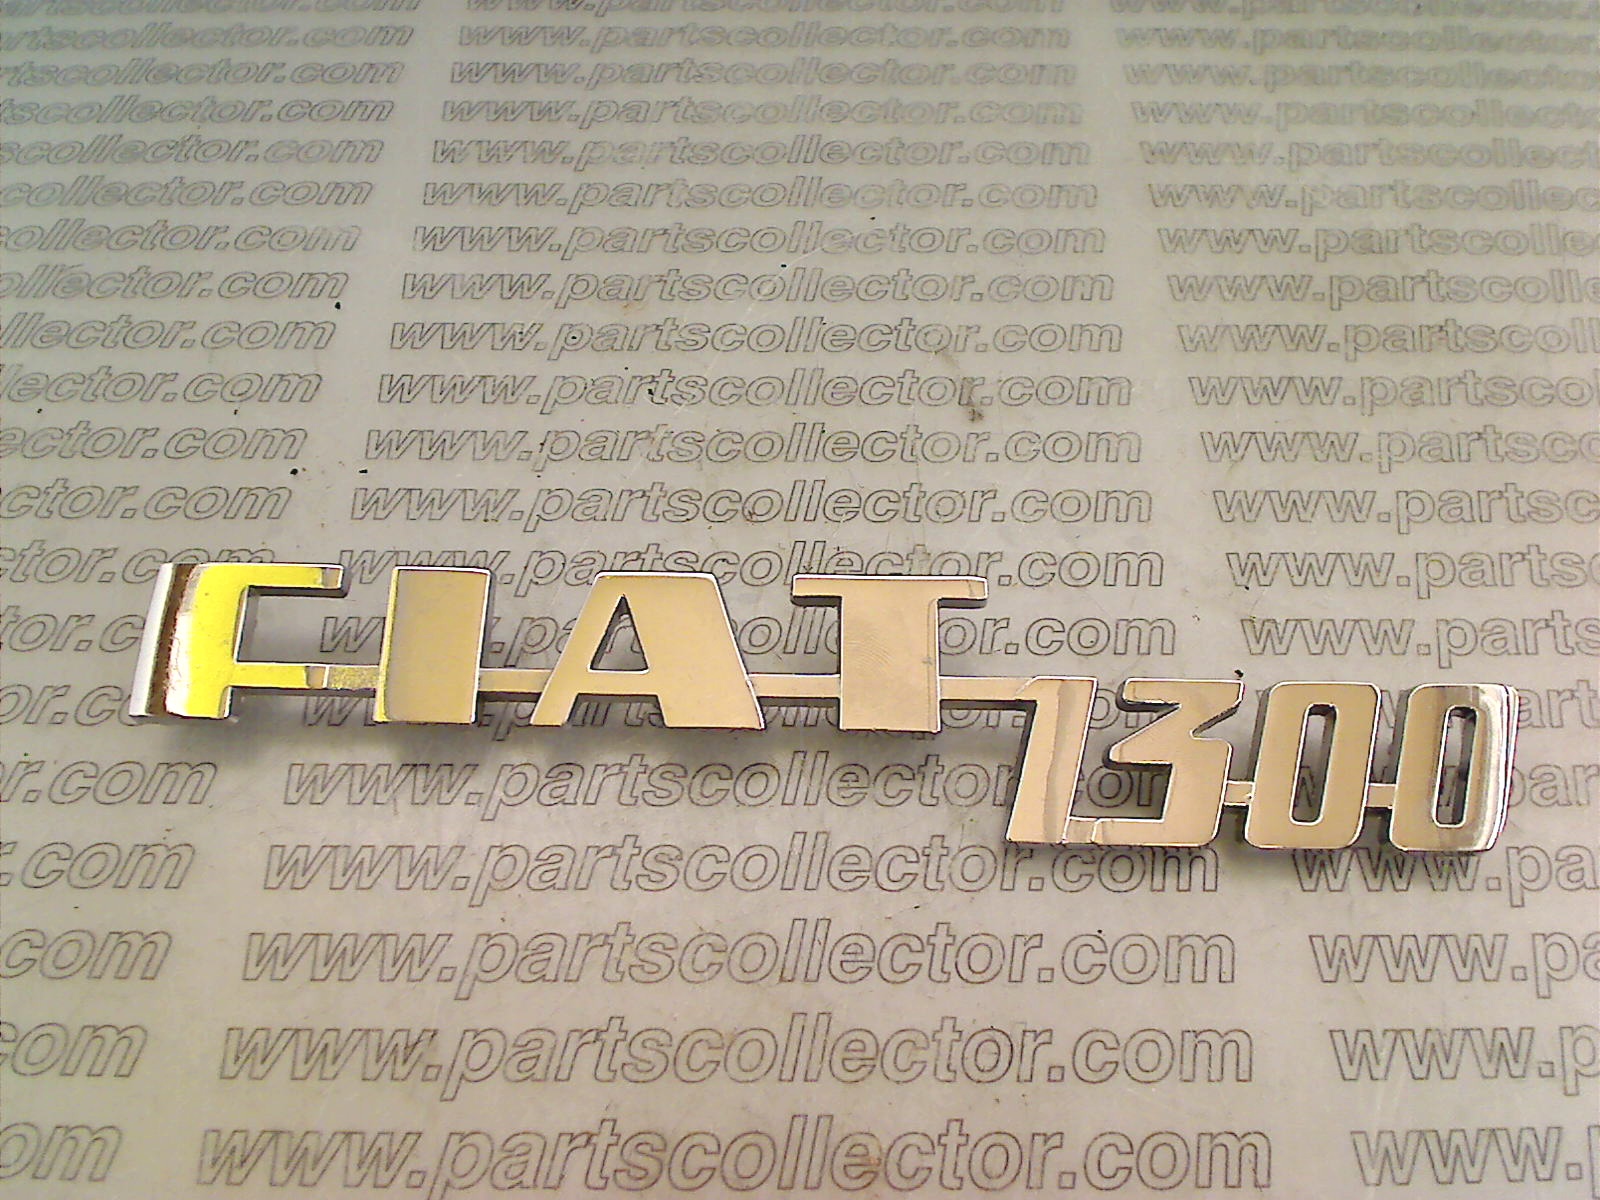 FIAT 1300 BADGE